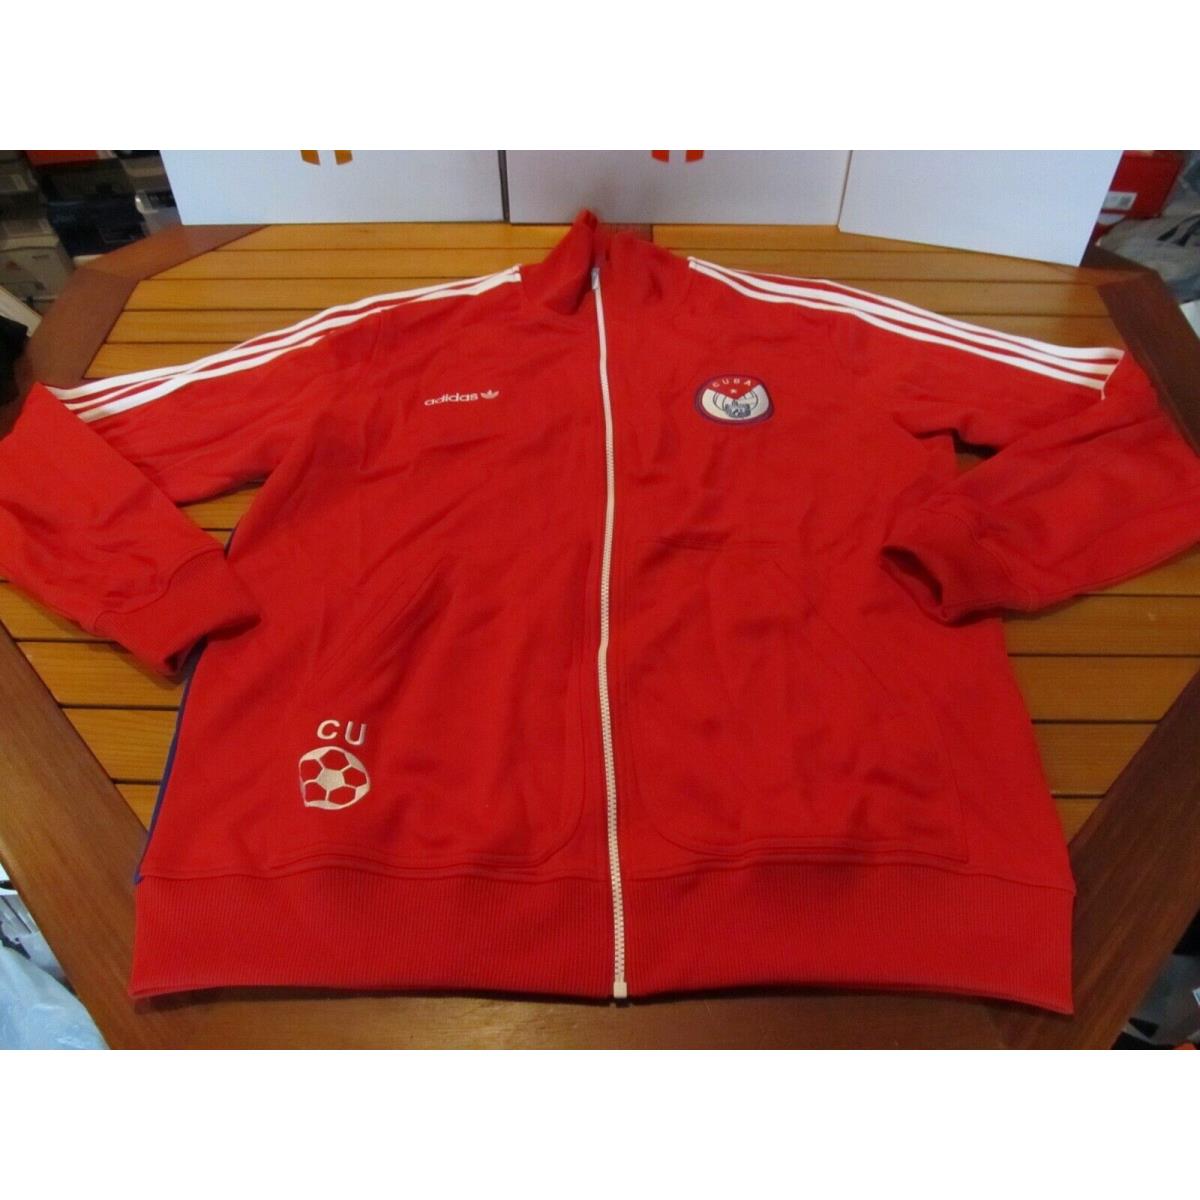 Adidas Originals Cuba TT Track Jacket Trefoil Red Blue XL 232235 Soccer